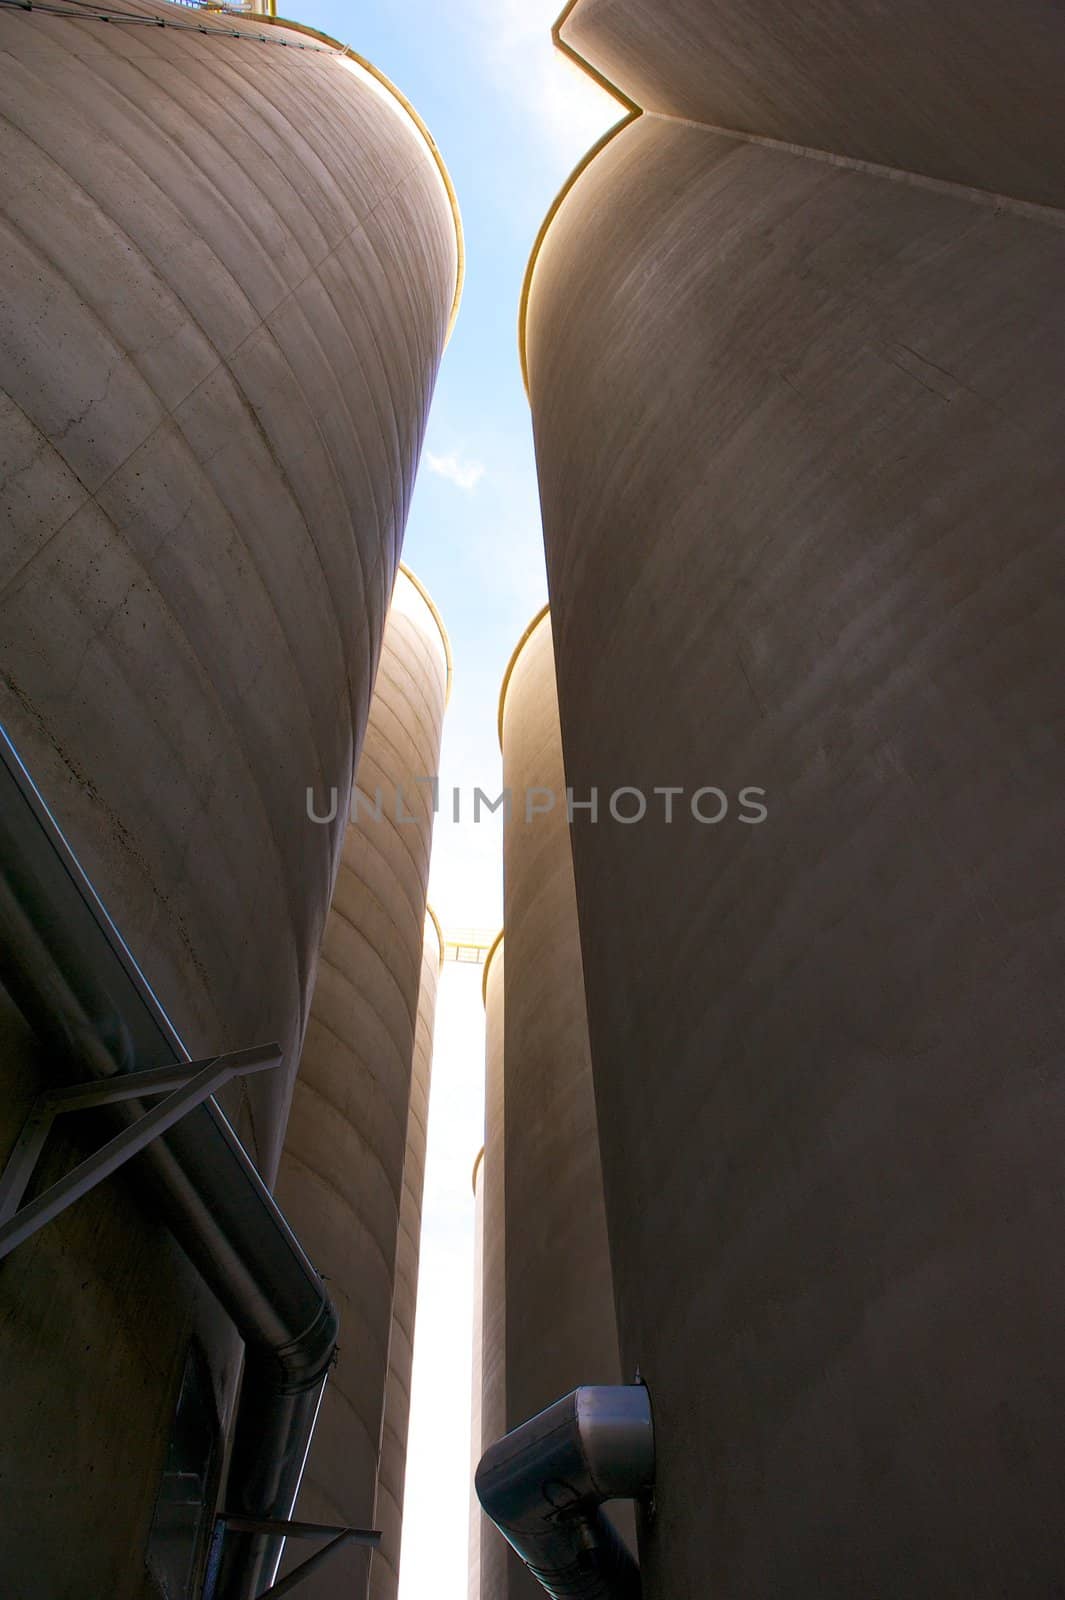 Towering Concrete Grain Silos by pixelsnap